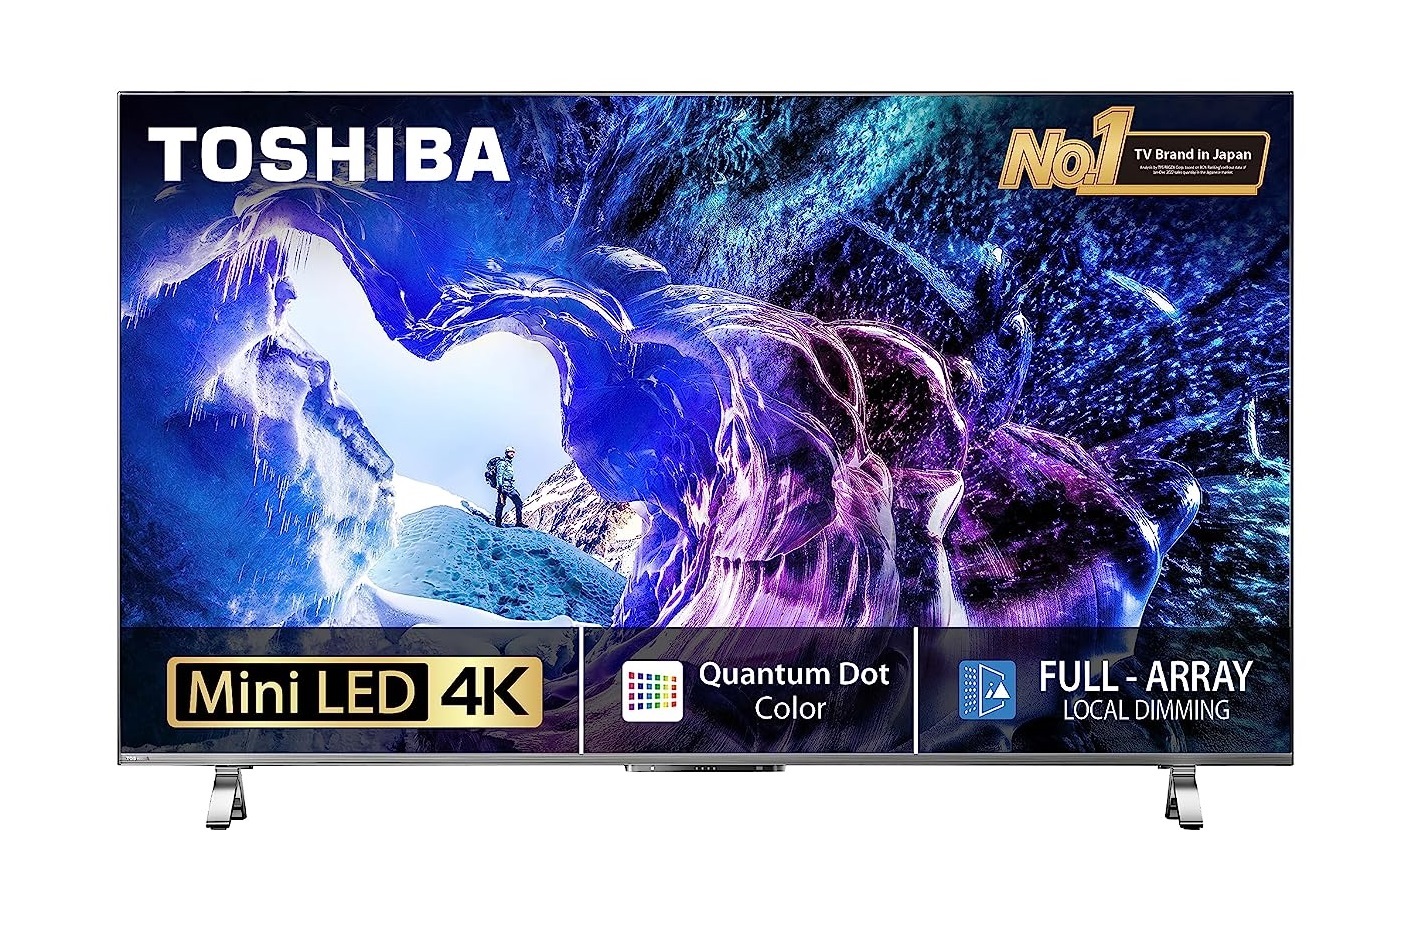 Представлена серия телевизоров Toshiba M650 с 4K Mini LED-экранами